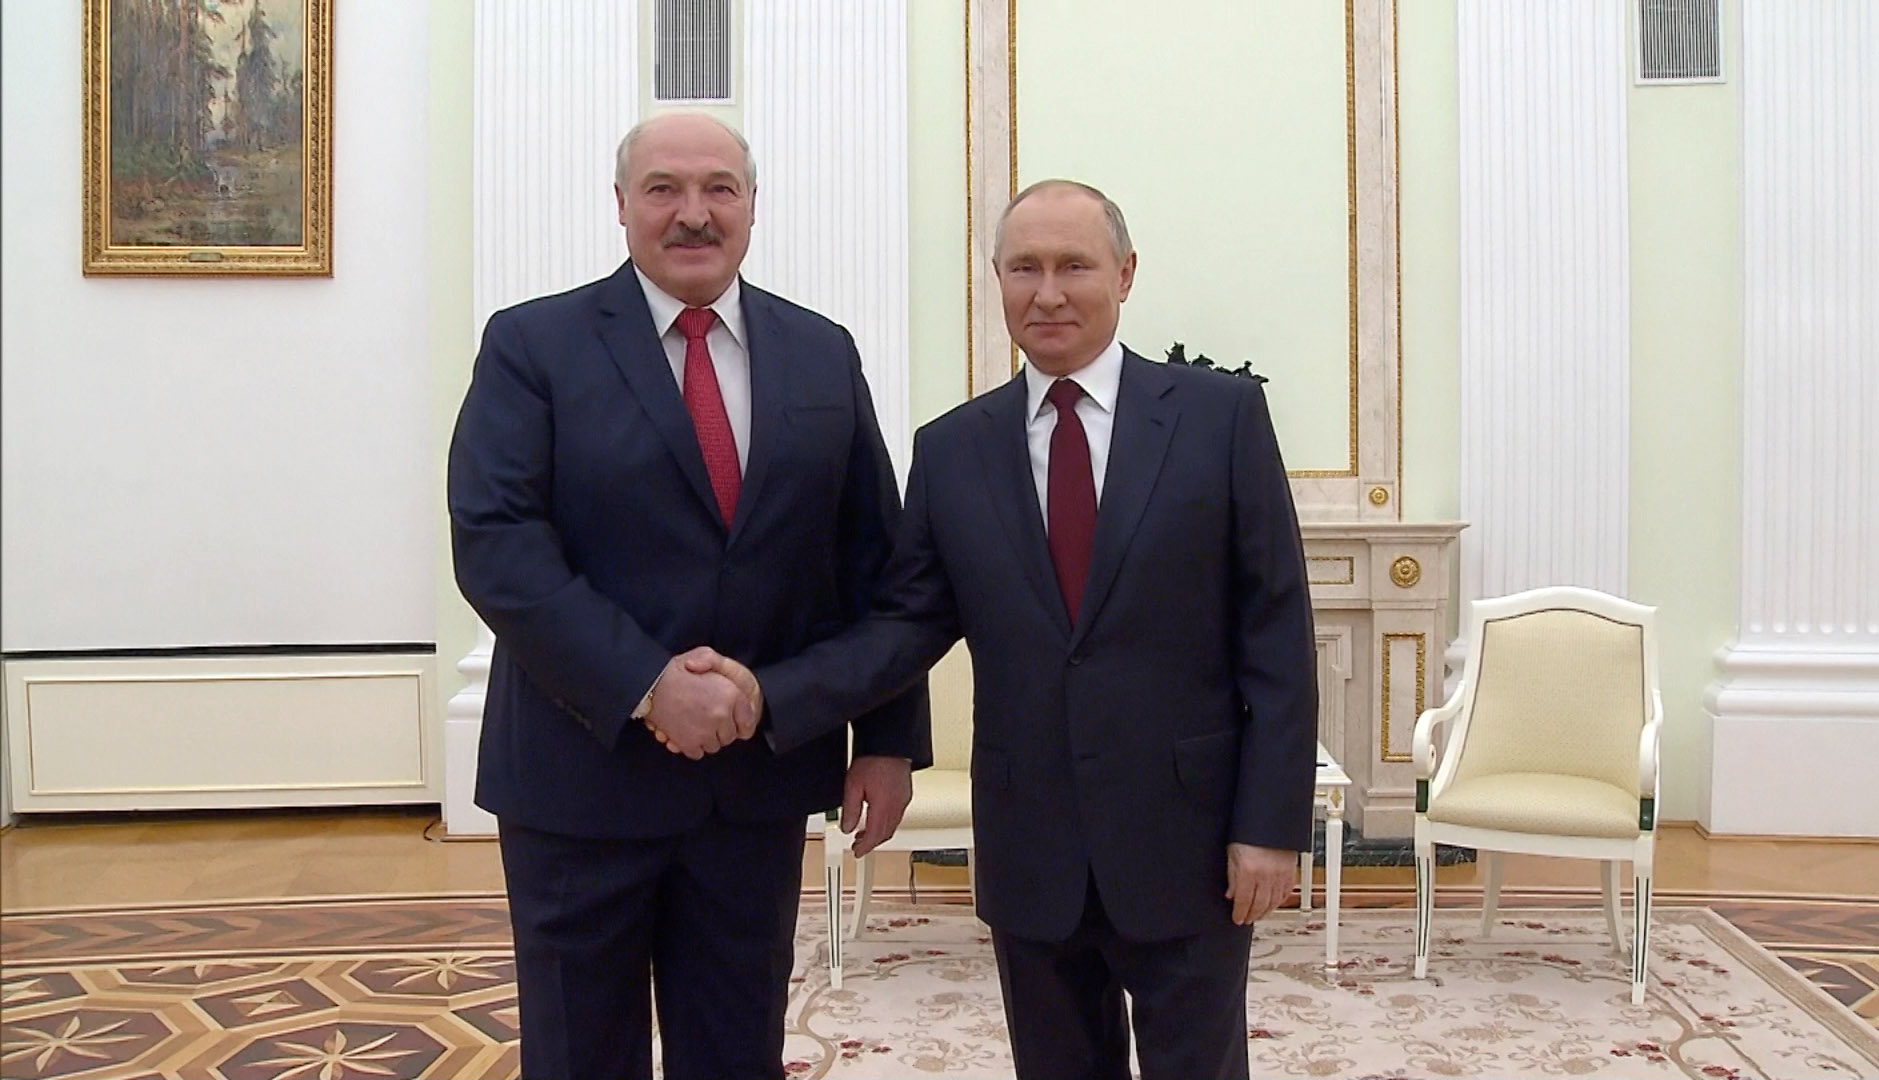  Владимир Путин и Александр Лукашенко 1 июля примут участие в VIII Форуме регионов России и Беларуси